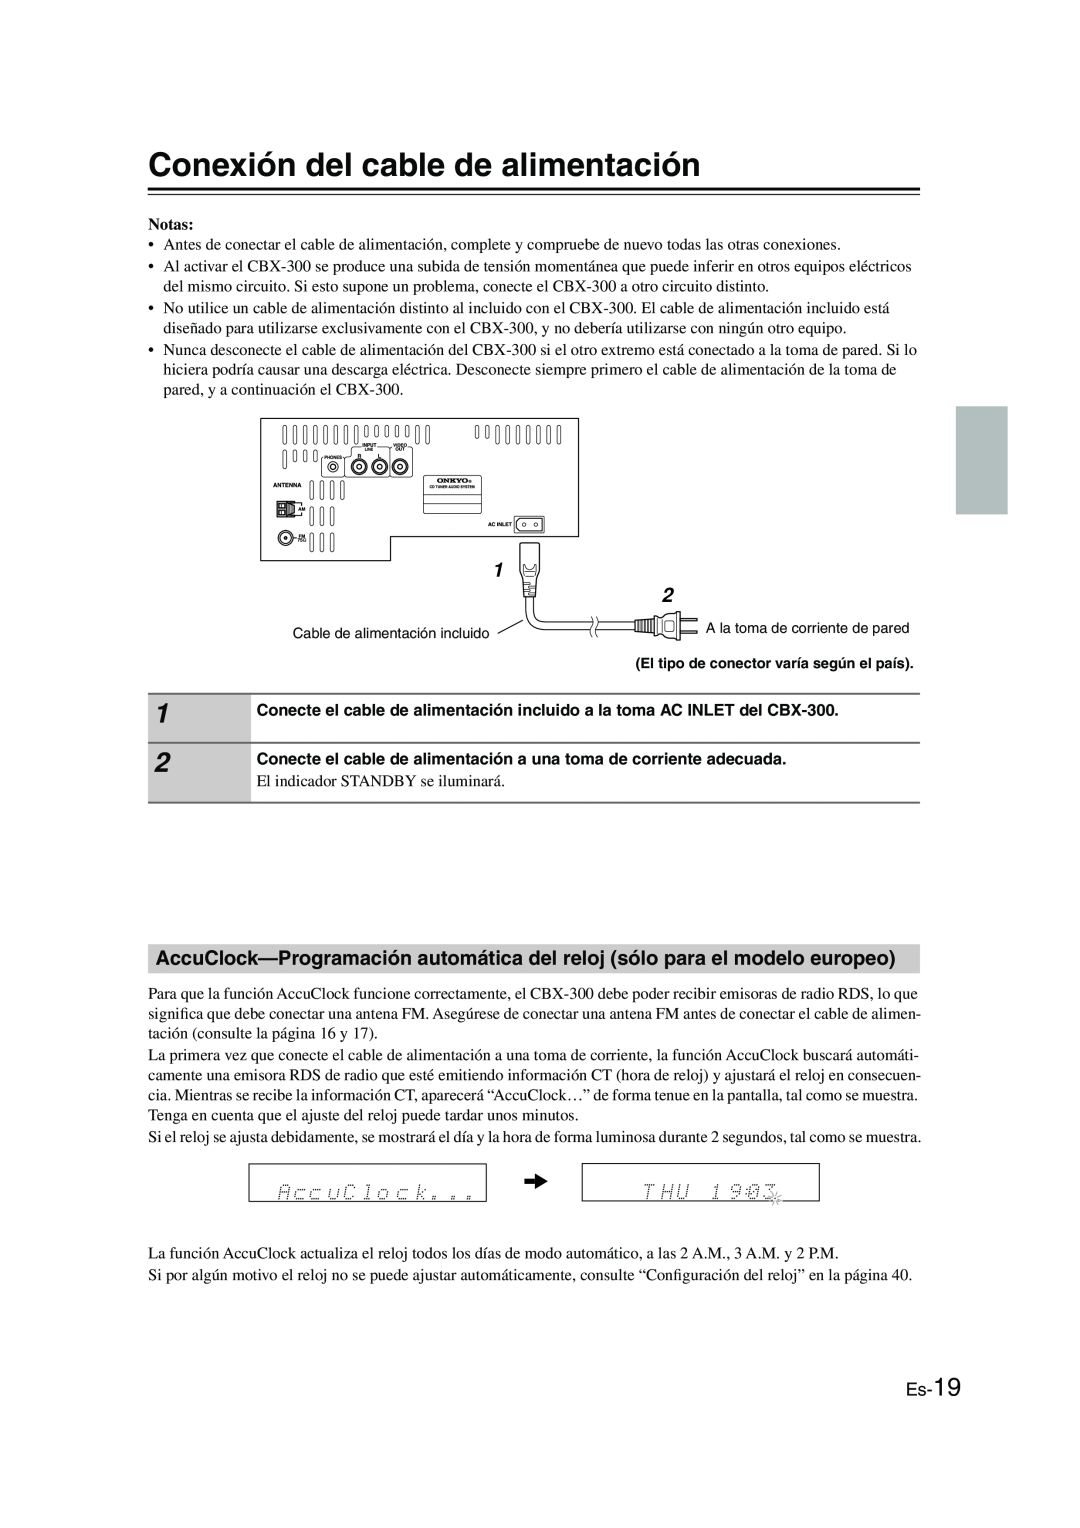 Onkyo CBX-300 instruction manual Conexión del cable de alimentación, Es-19, Notas 